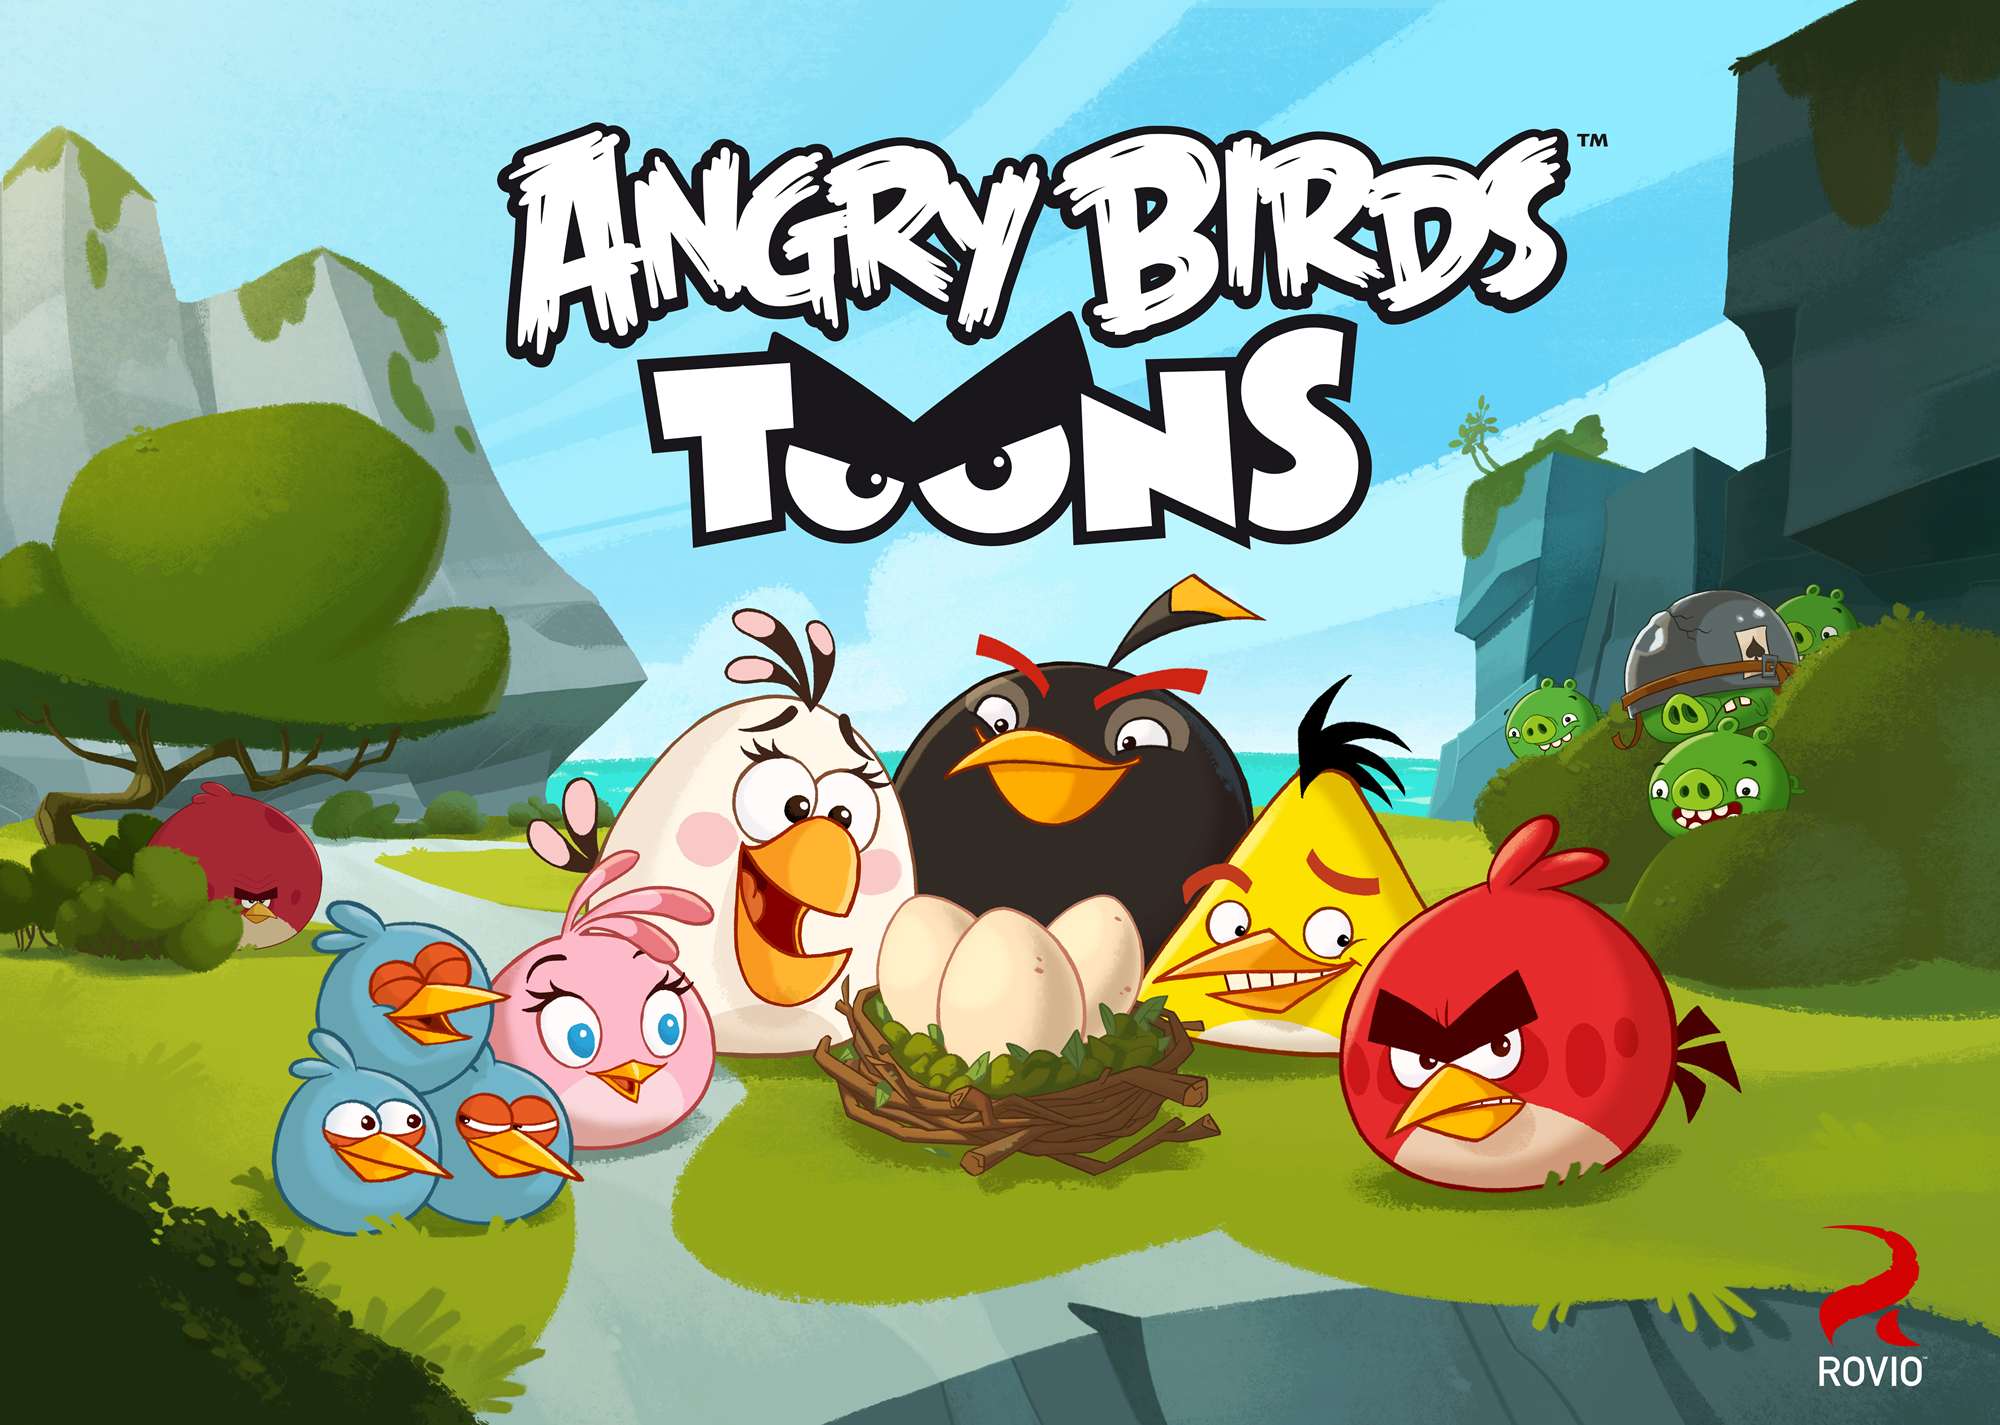 Angry birds сердитый. Игра Angry Birds toons. Злые птички (Angry Birds toons!) 2013. Angry Birds игры Rovio. Ангри берс 2.